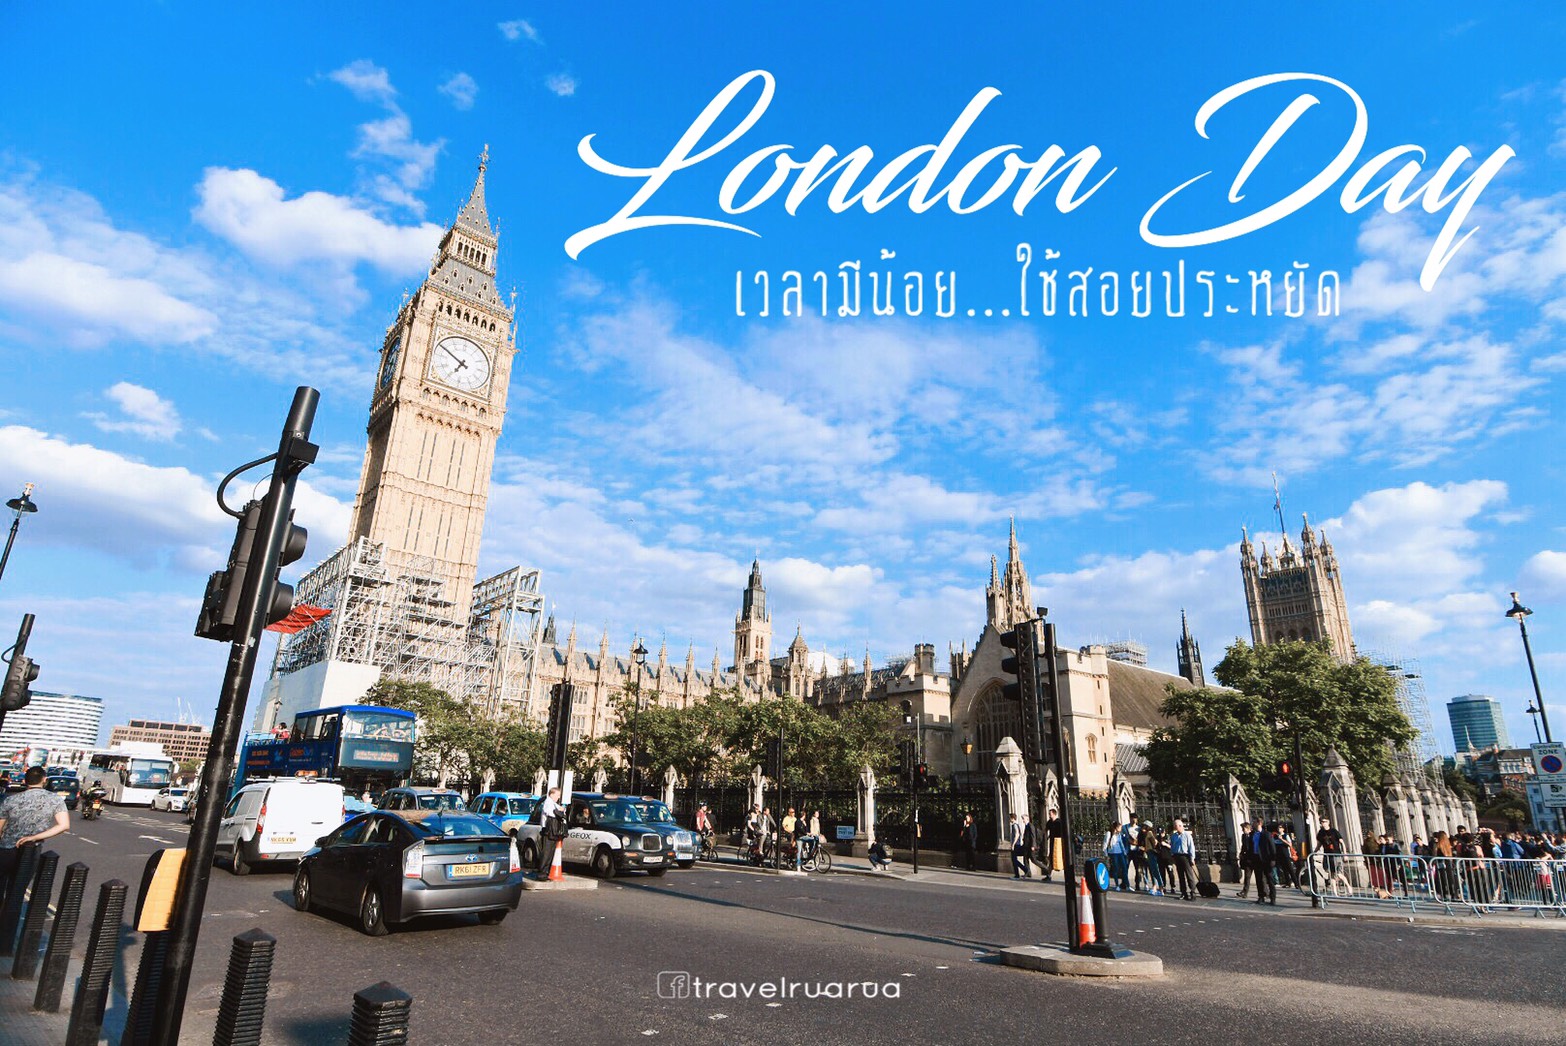 เที่ยวรัวรัว : London Day เวลามีน้อย ใช้สอยประหยัด - Pantip